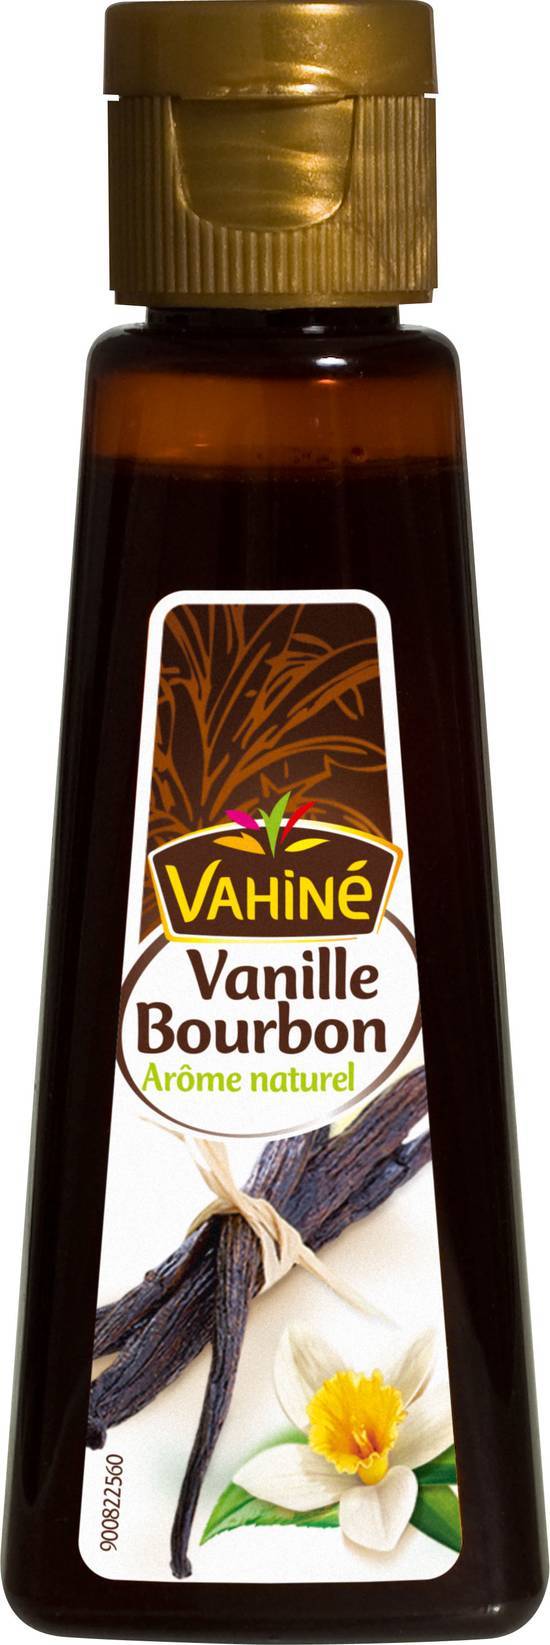 Vahiné - Arôme naturel (vanille bourbon)